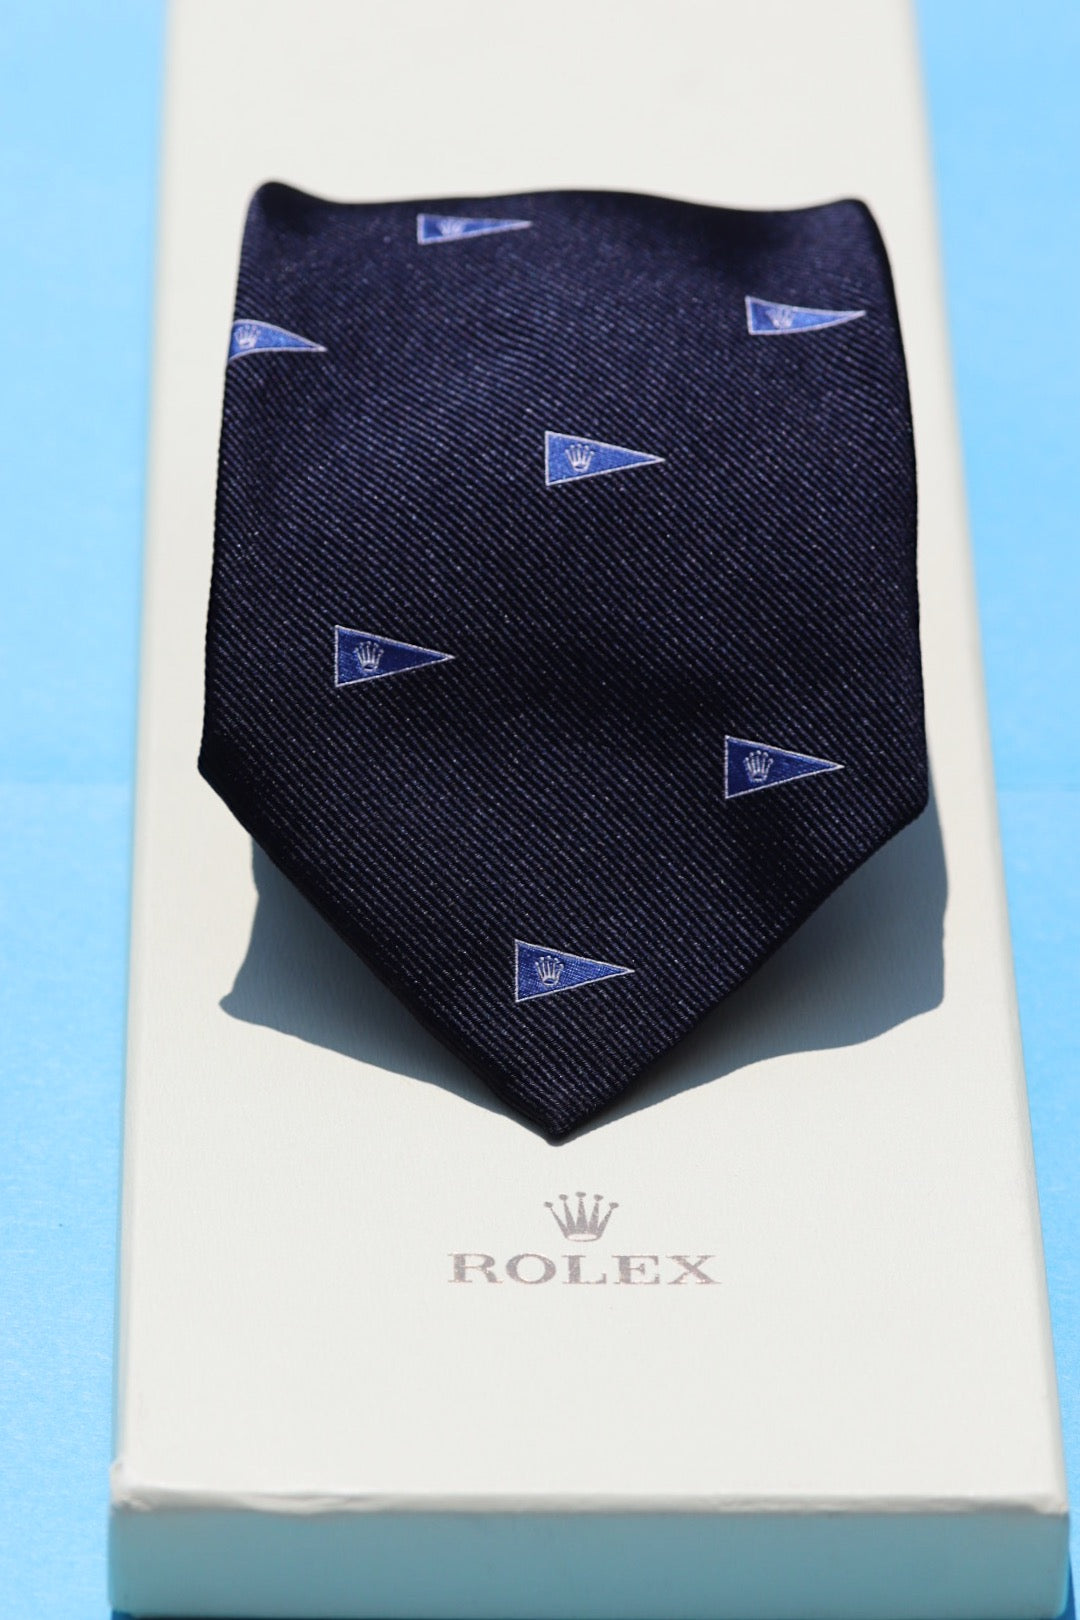 Rolex tie